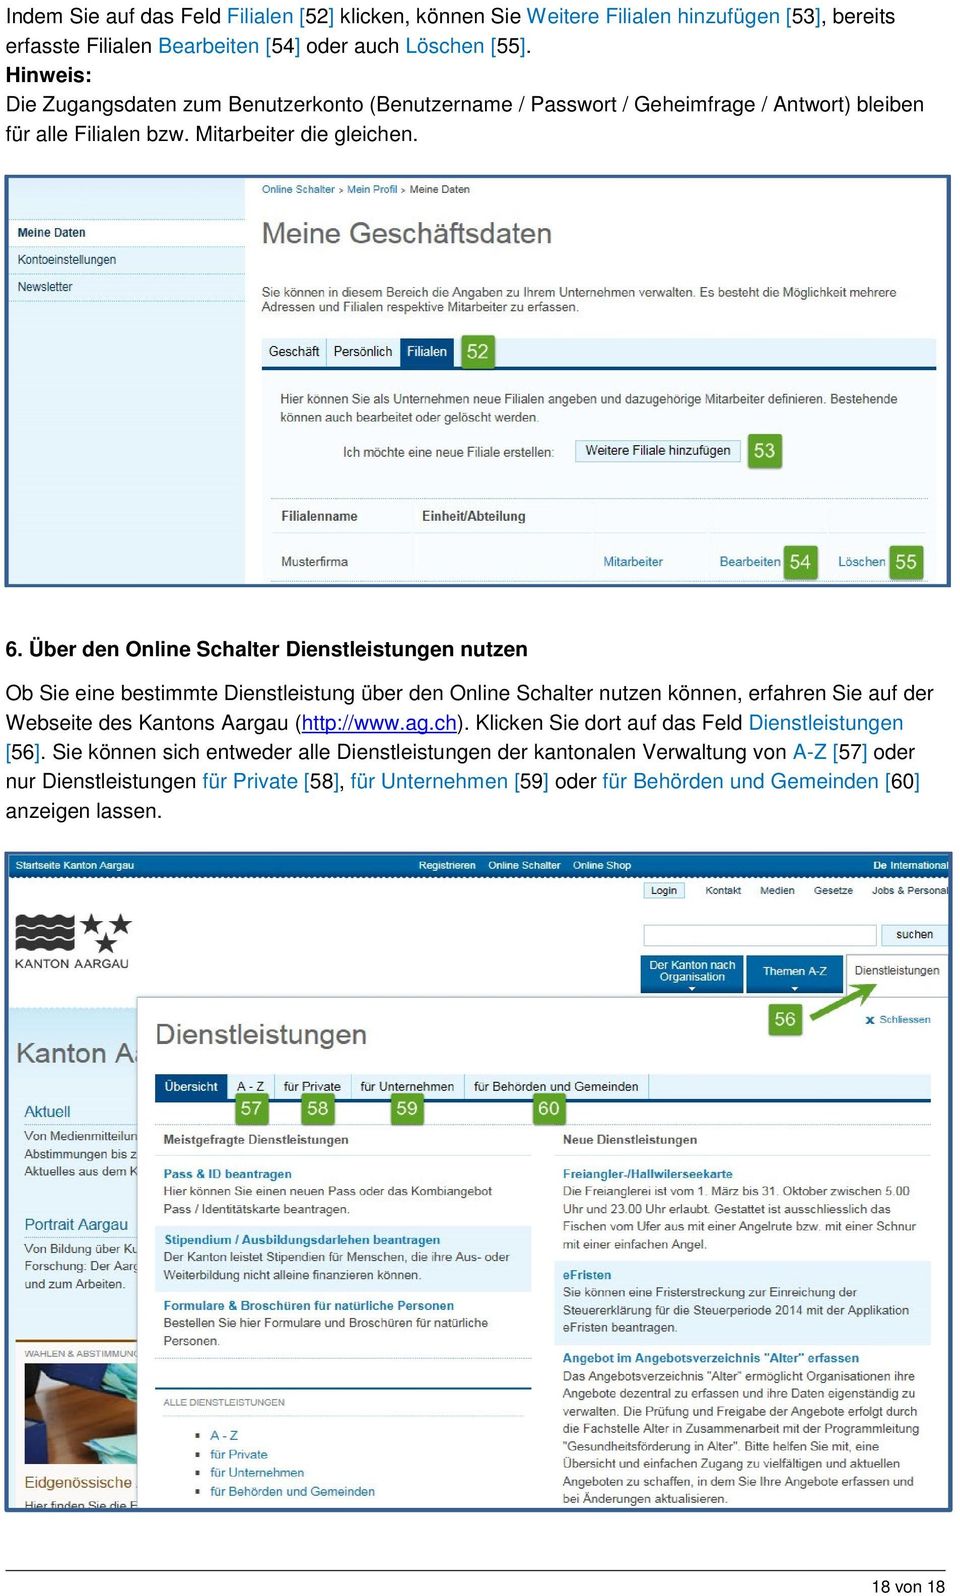 Über den Online Schalter Dienstleistungen nutzen Ob Sie eine bestimmte Dienstleistung über den Online Schalter nutzen können, erfahren Sie auf der Webseite des Kantons Aargau (http://www.ag.ch).